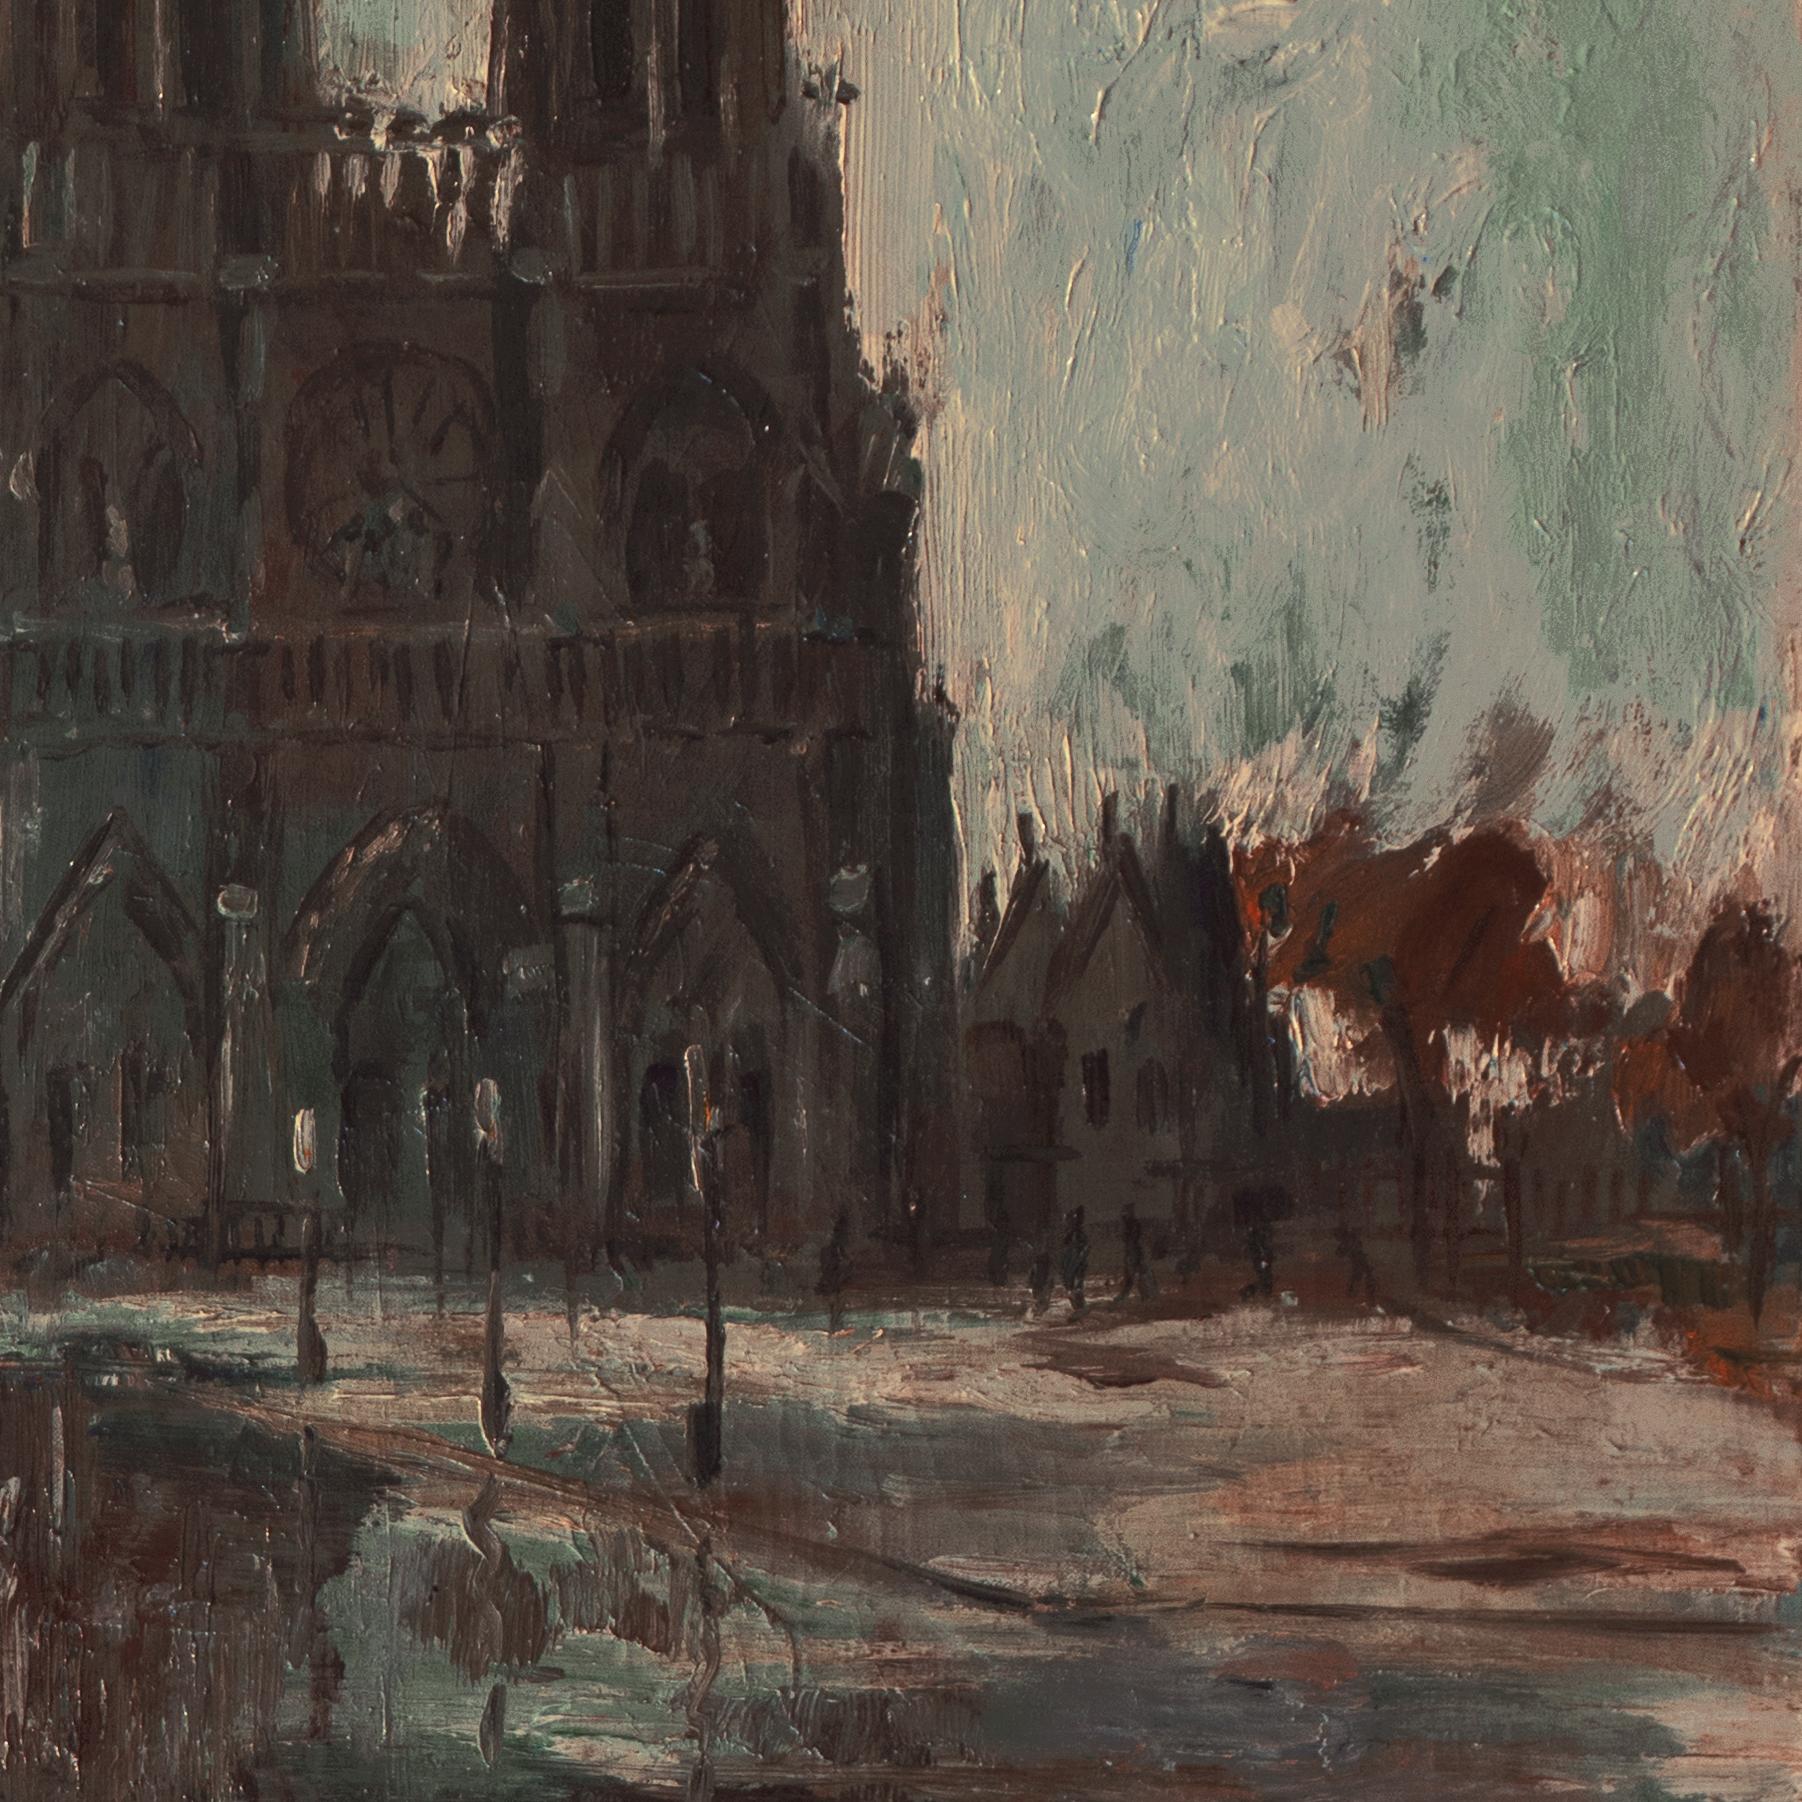 'Paris, Notre Dame after the Storm', Salon des Artistes Français, Woman Artist - Black Landscape Painting by Louise Sourdy 